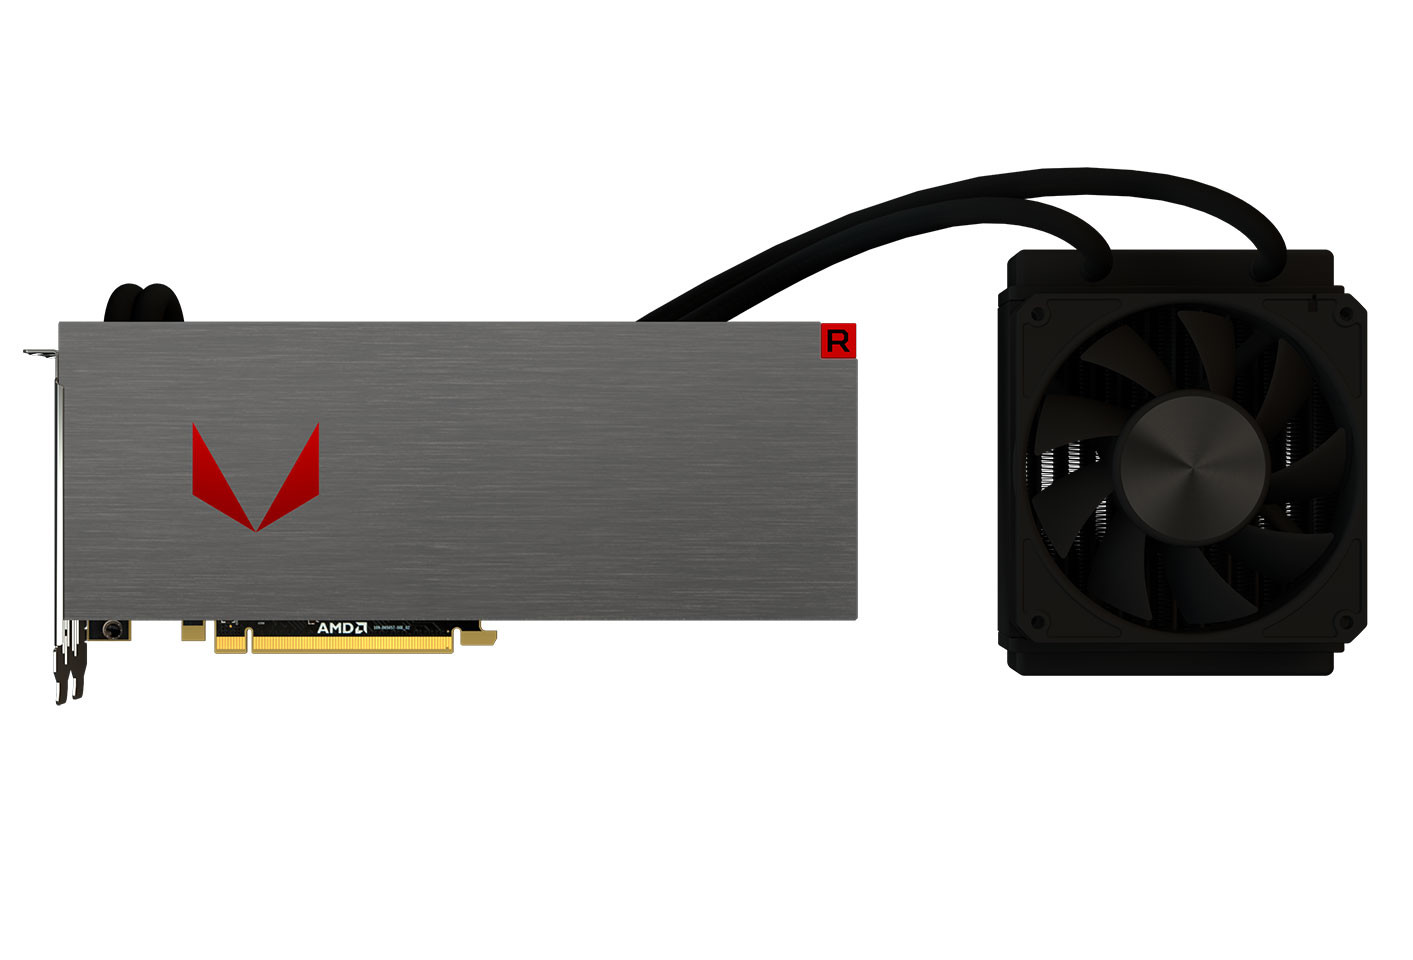 Состоялся официальный анонс линейки игровых видеокарт AMD Radeon RX Vega